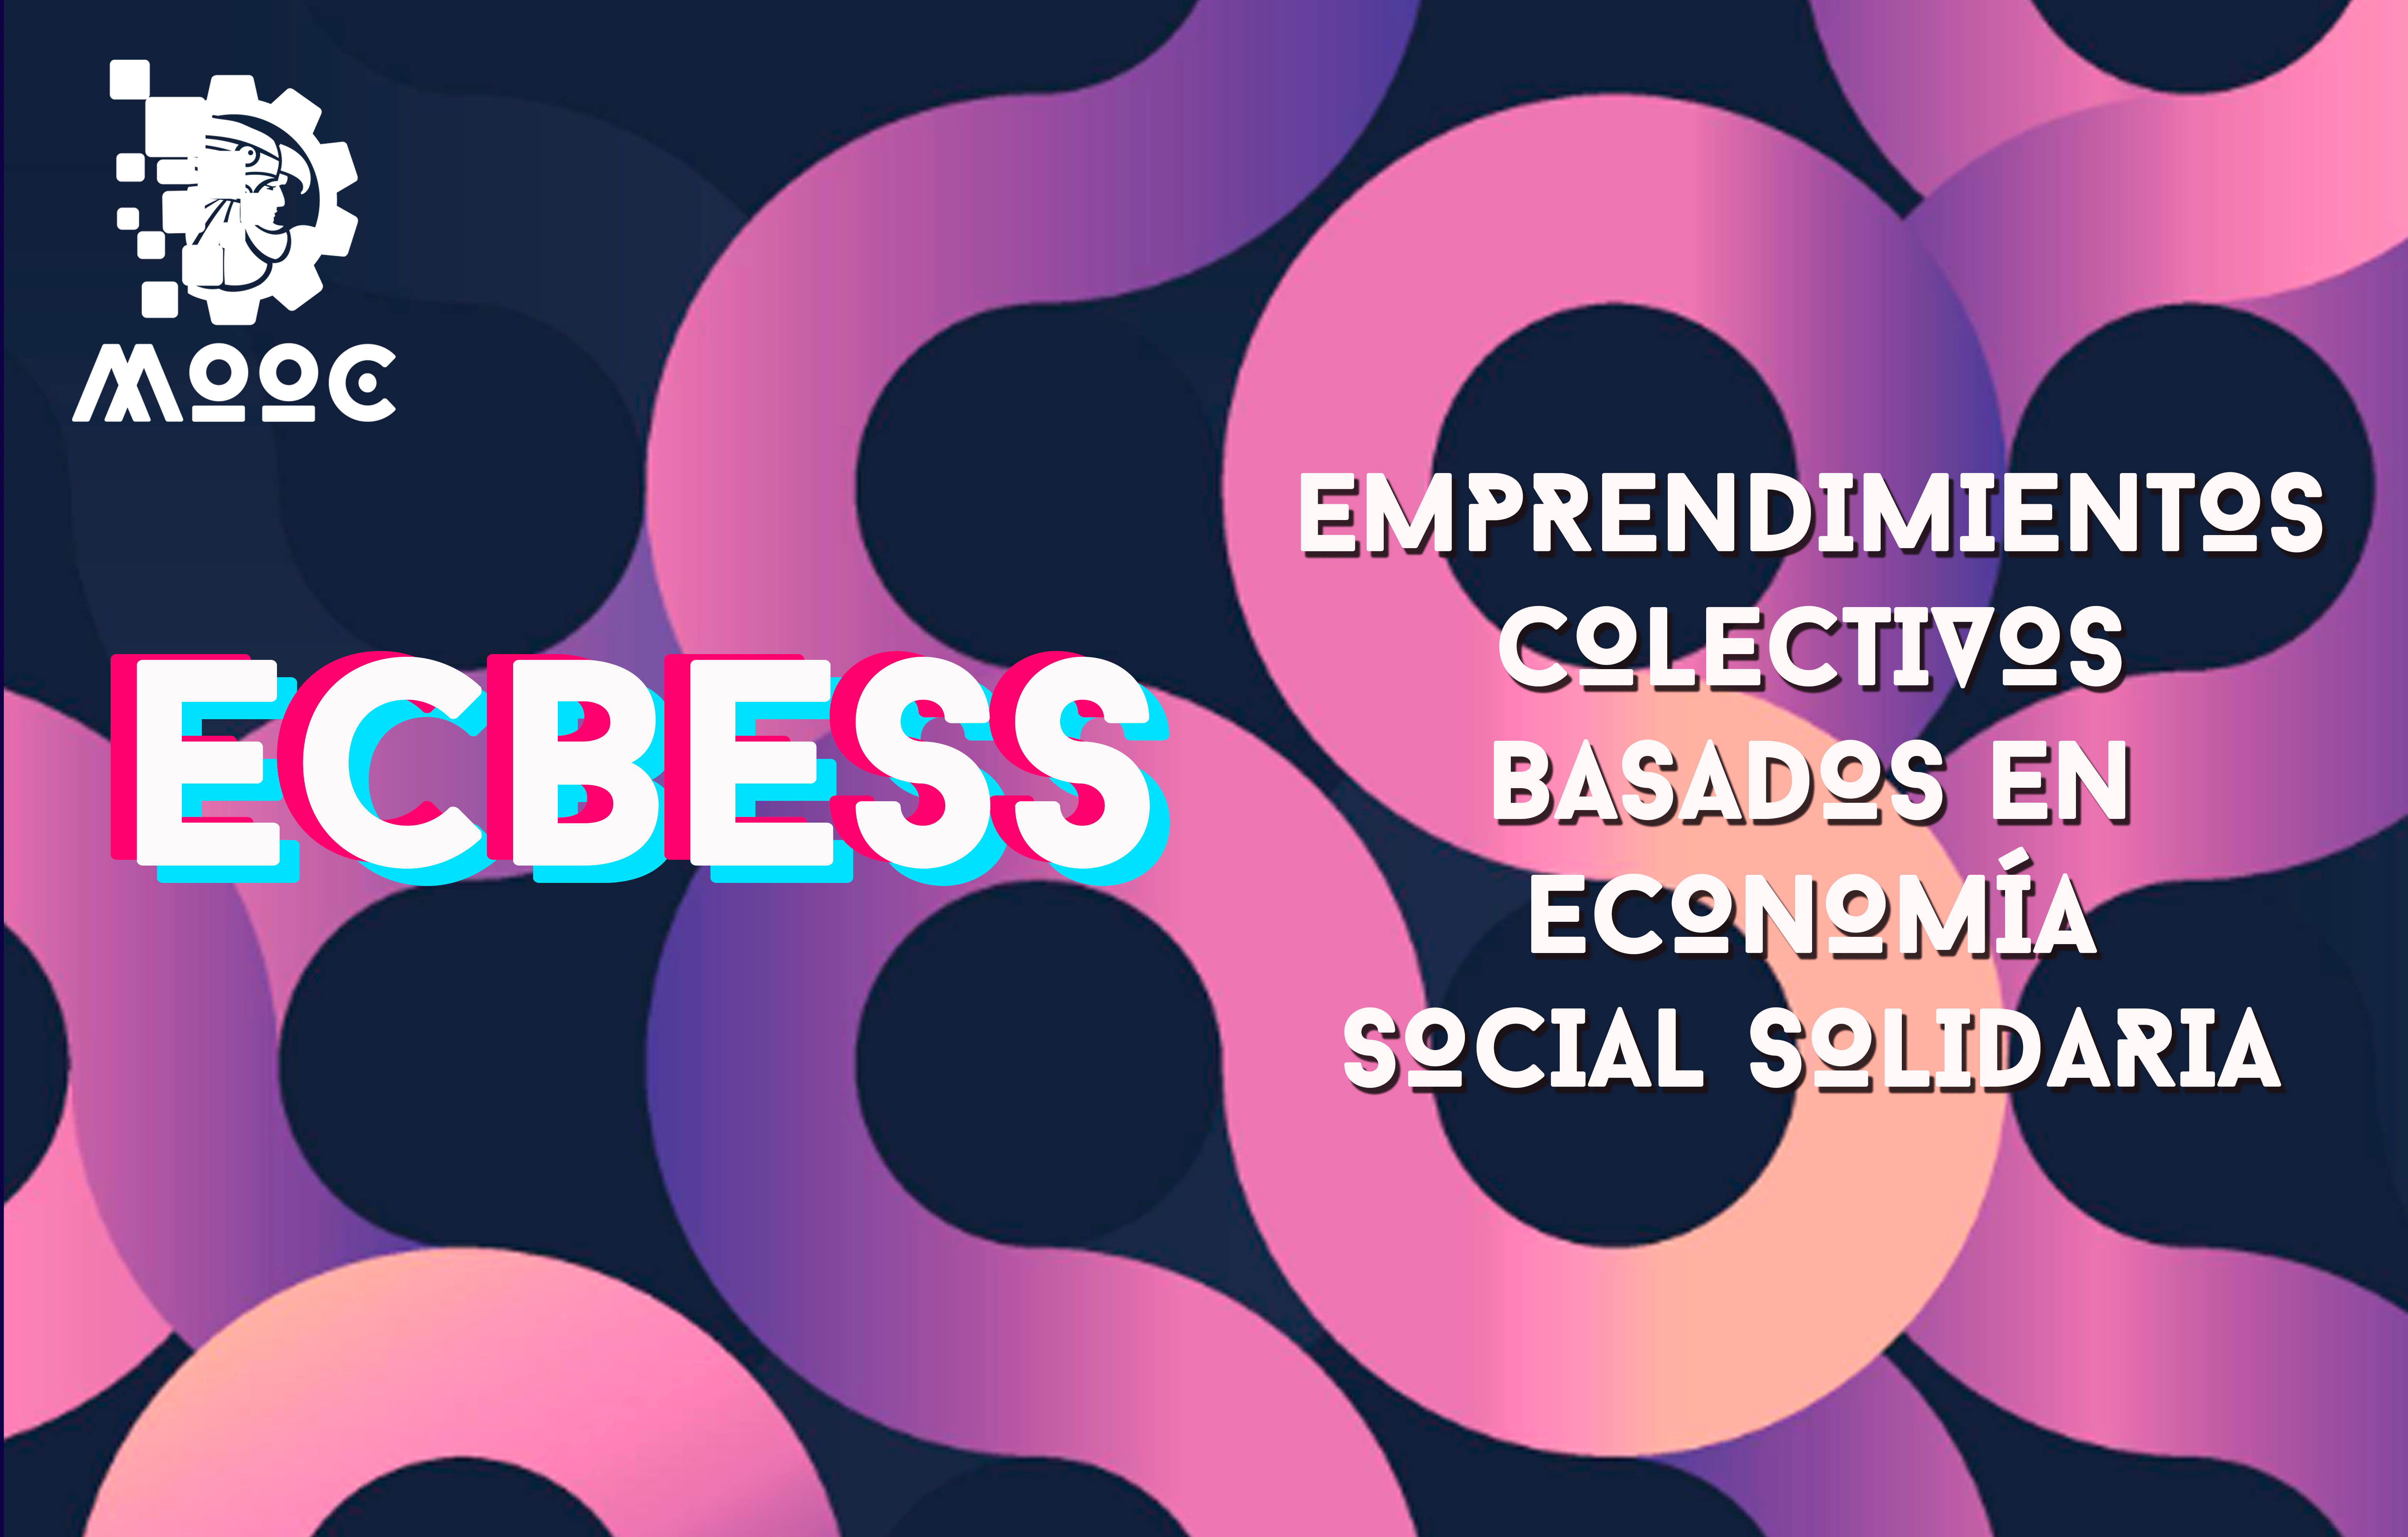 Emprendimientos colectivos basados en economía social solidaria ECBESS01-001